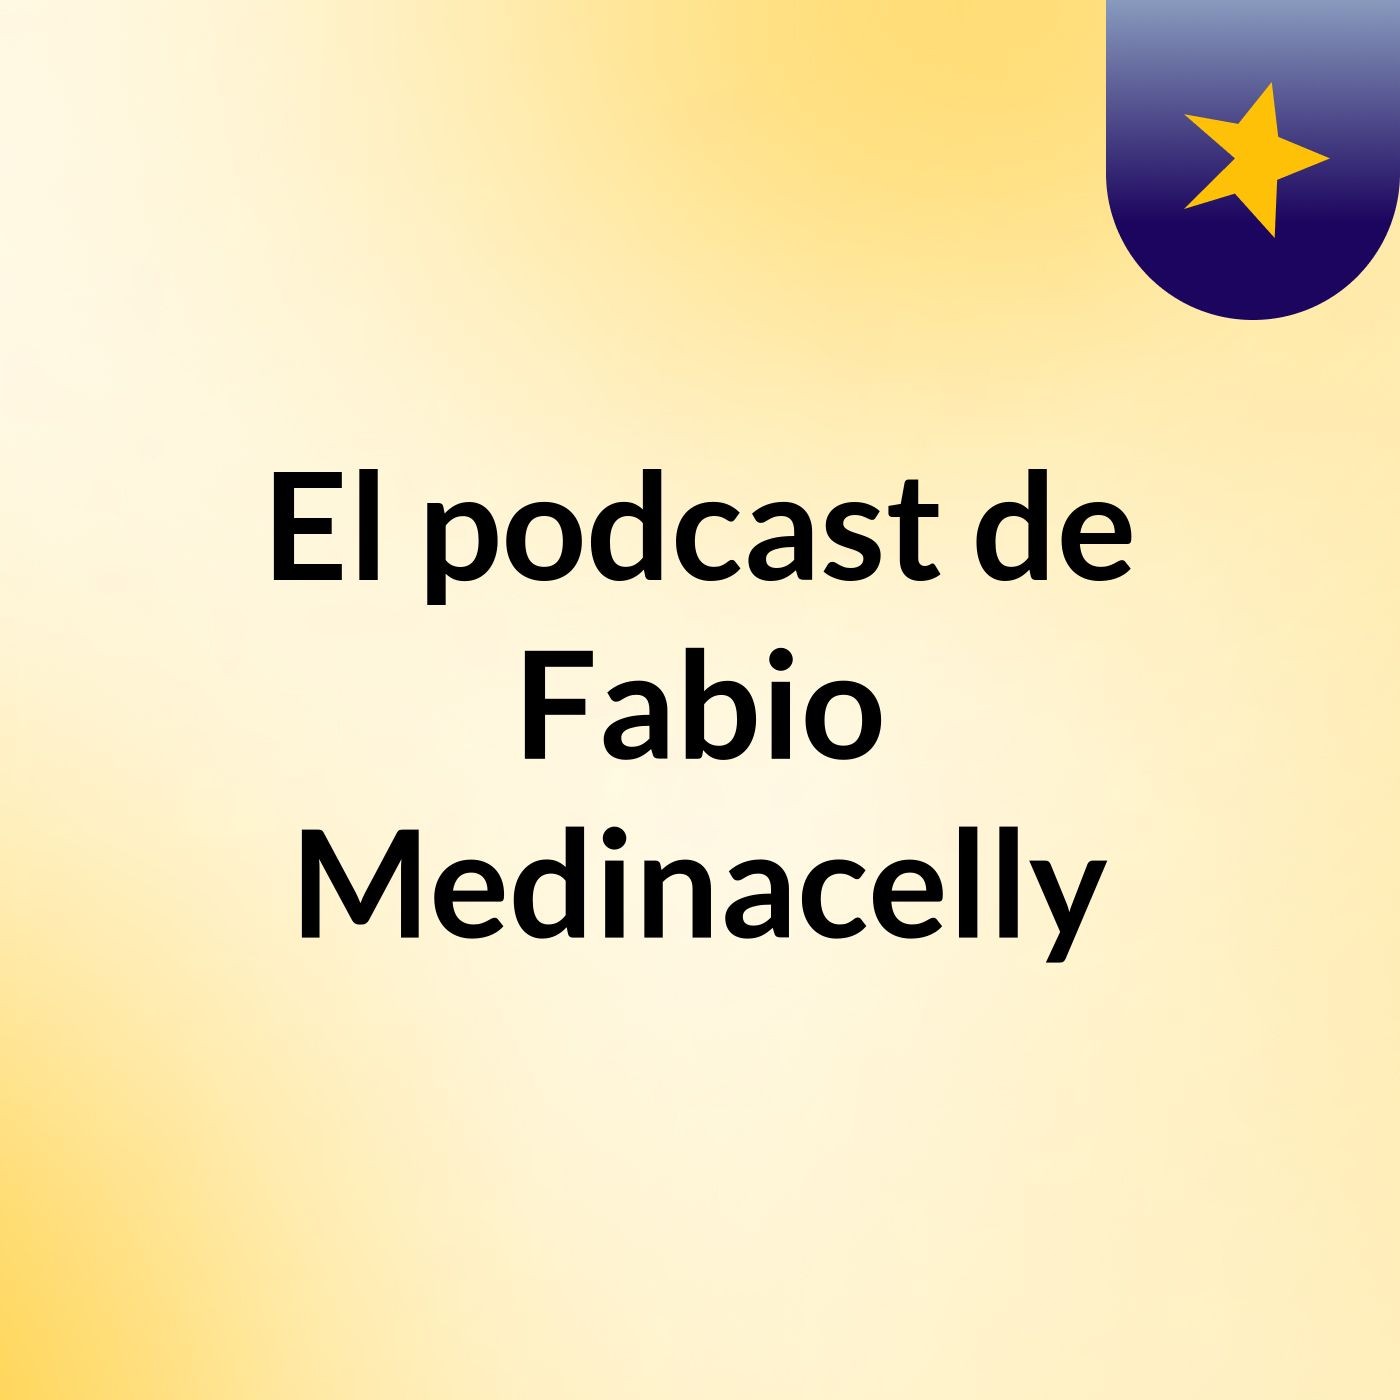 El podcast de Fabio Medinacelly